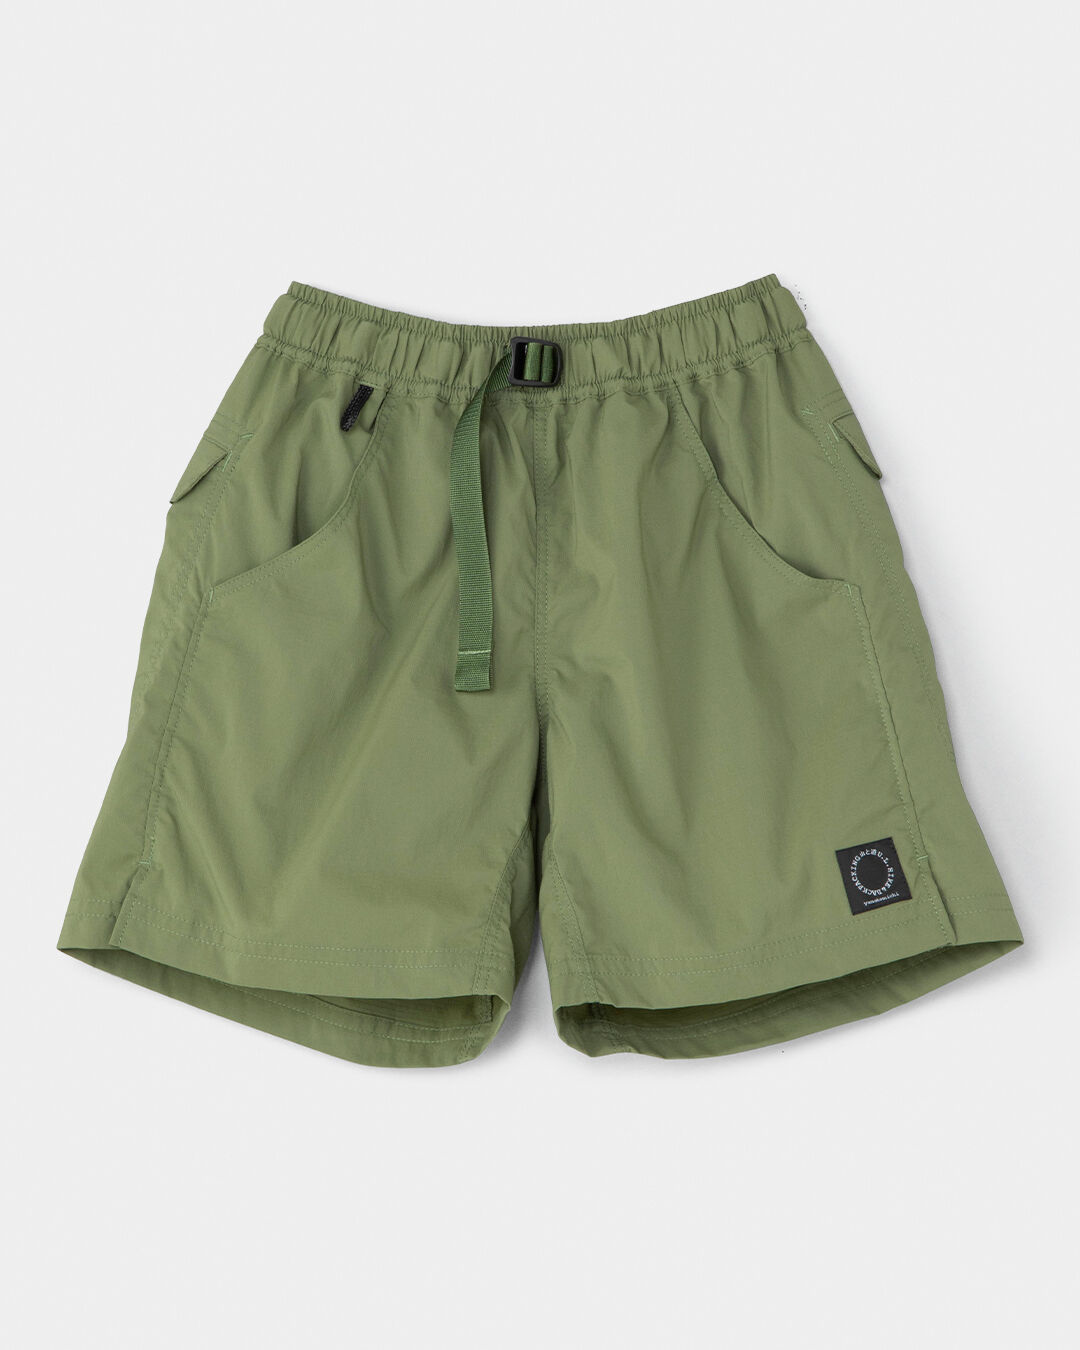 山と道 5-Pocket Shorts Mサイズ - アウトドア